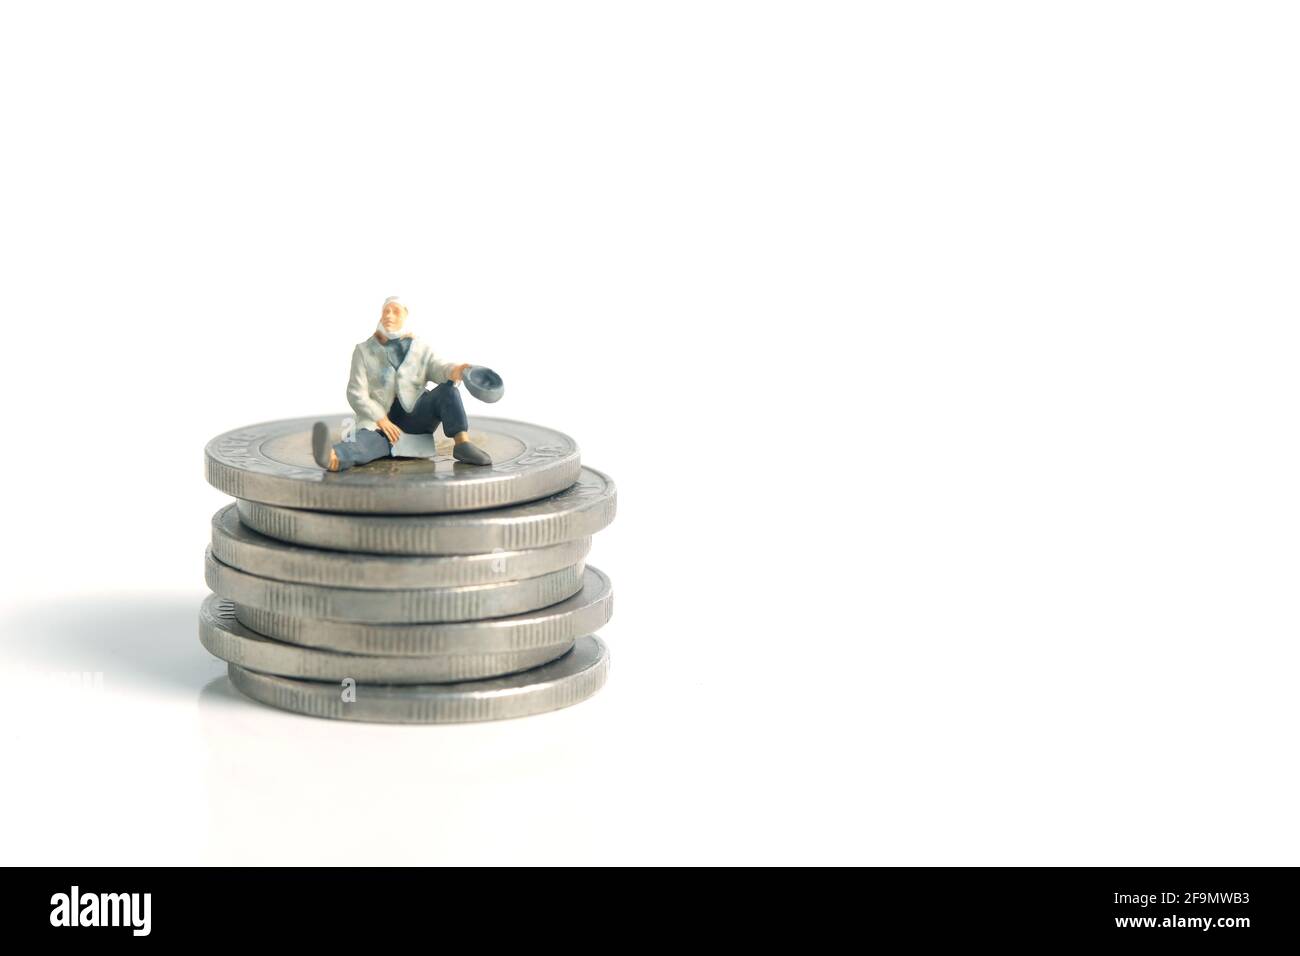 Miniatur kleine Menschen Spielzeug Fotografie. Ein armer Mann oder ein Bettler sitzen über dem Geldmünzstapel, isoliert auf weißem Hintergrund Stockfoto